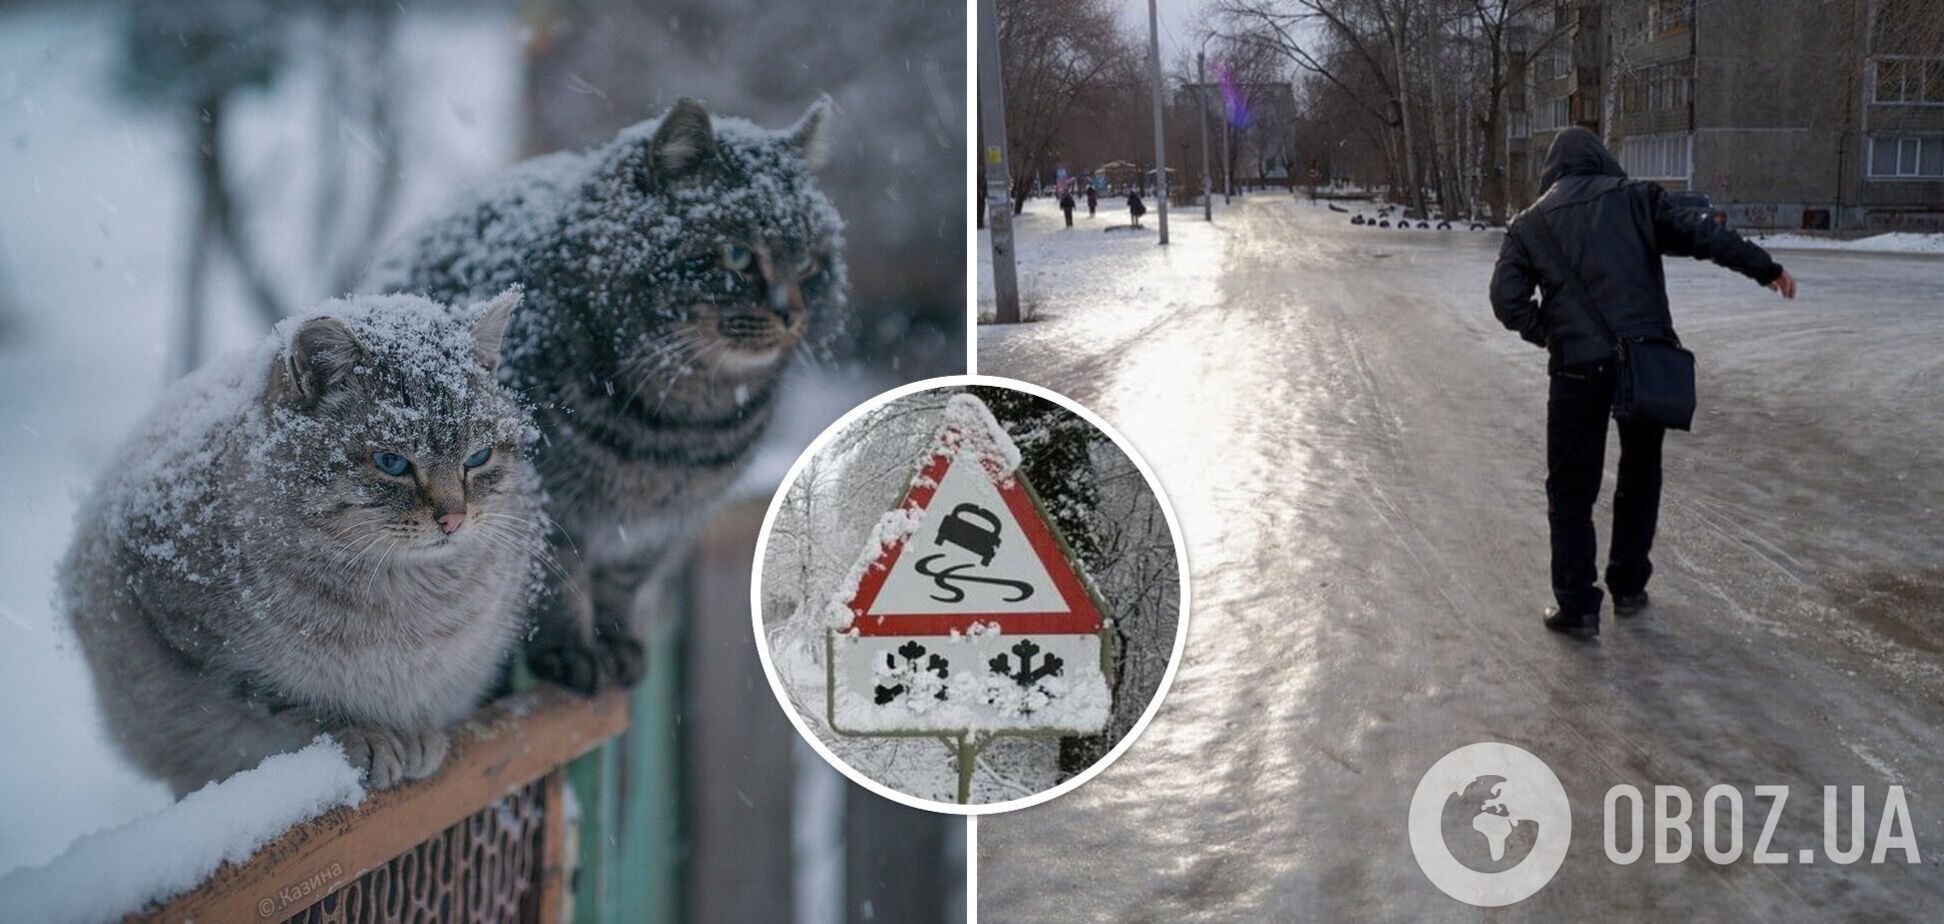 Хуртовини і ожеледиця на дорогах: в Укргідрометцентрі дали прогноз погоди на середу. Карта